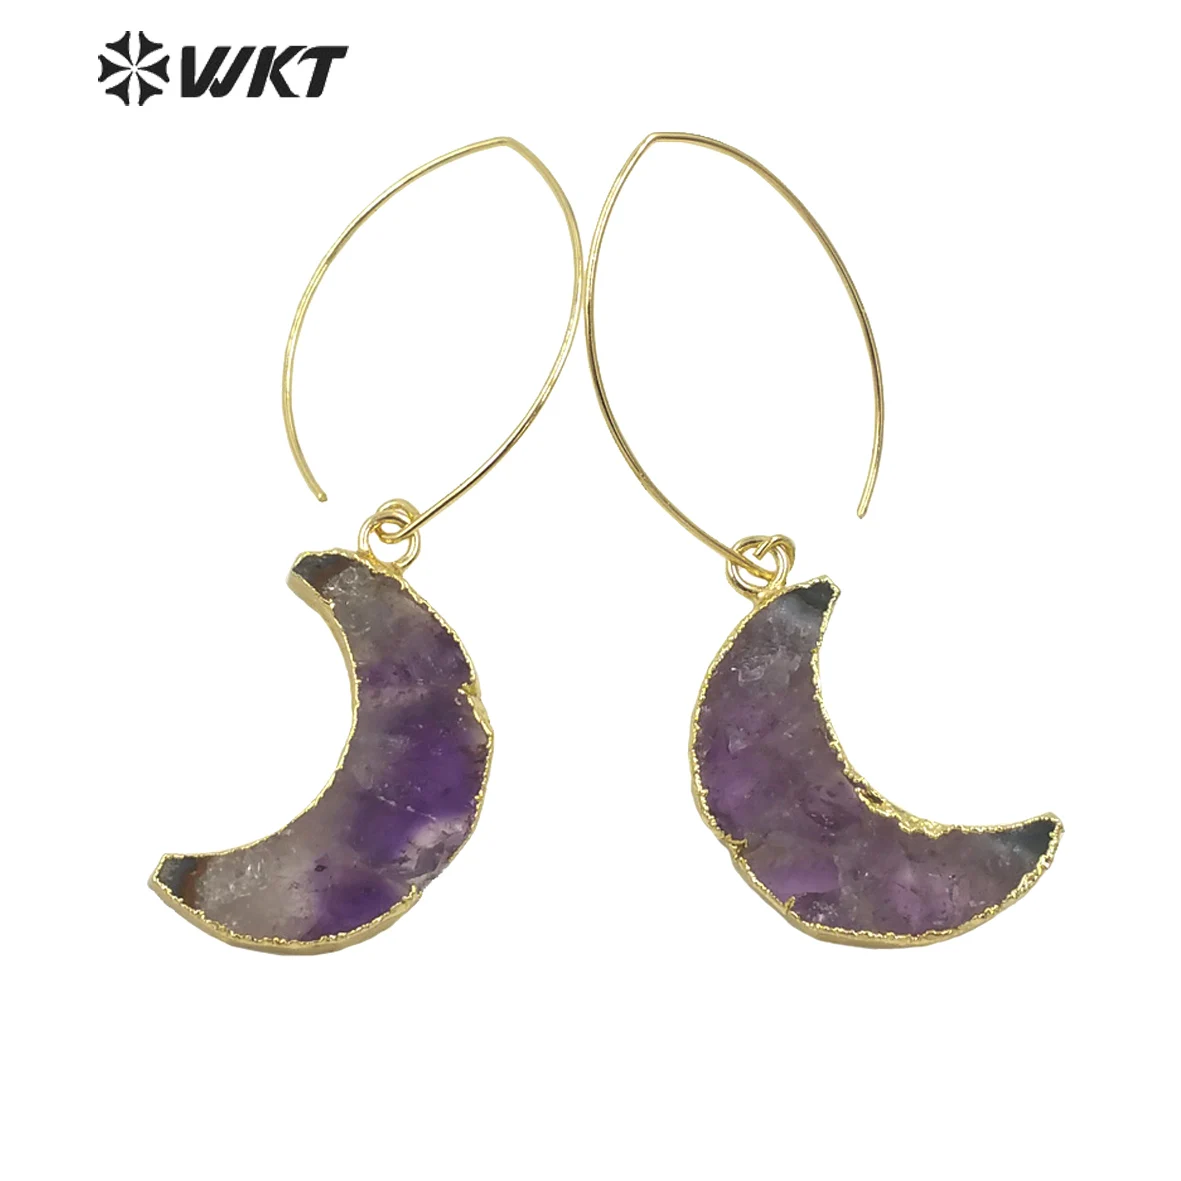 Серьги WT-E666 WKT в форме нежной Луны, бриллиантовые серьги, специальные женские ювелирные изделия, серьги из натурального камня